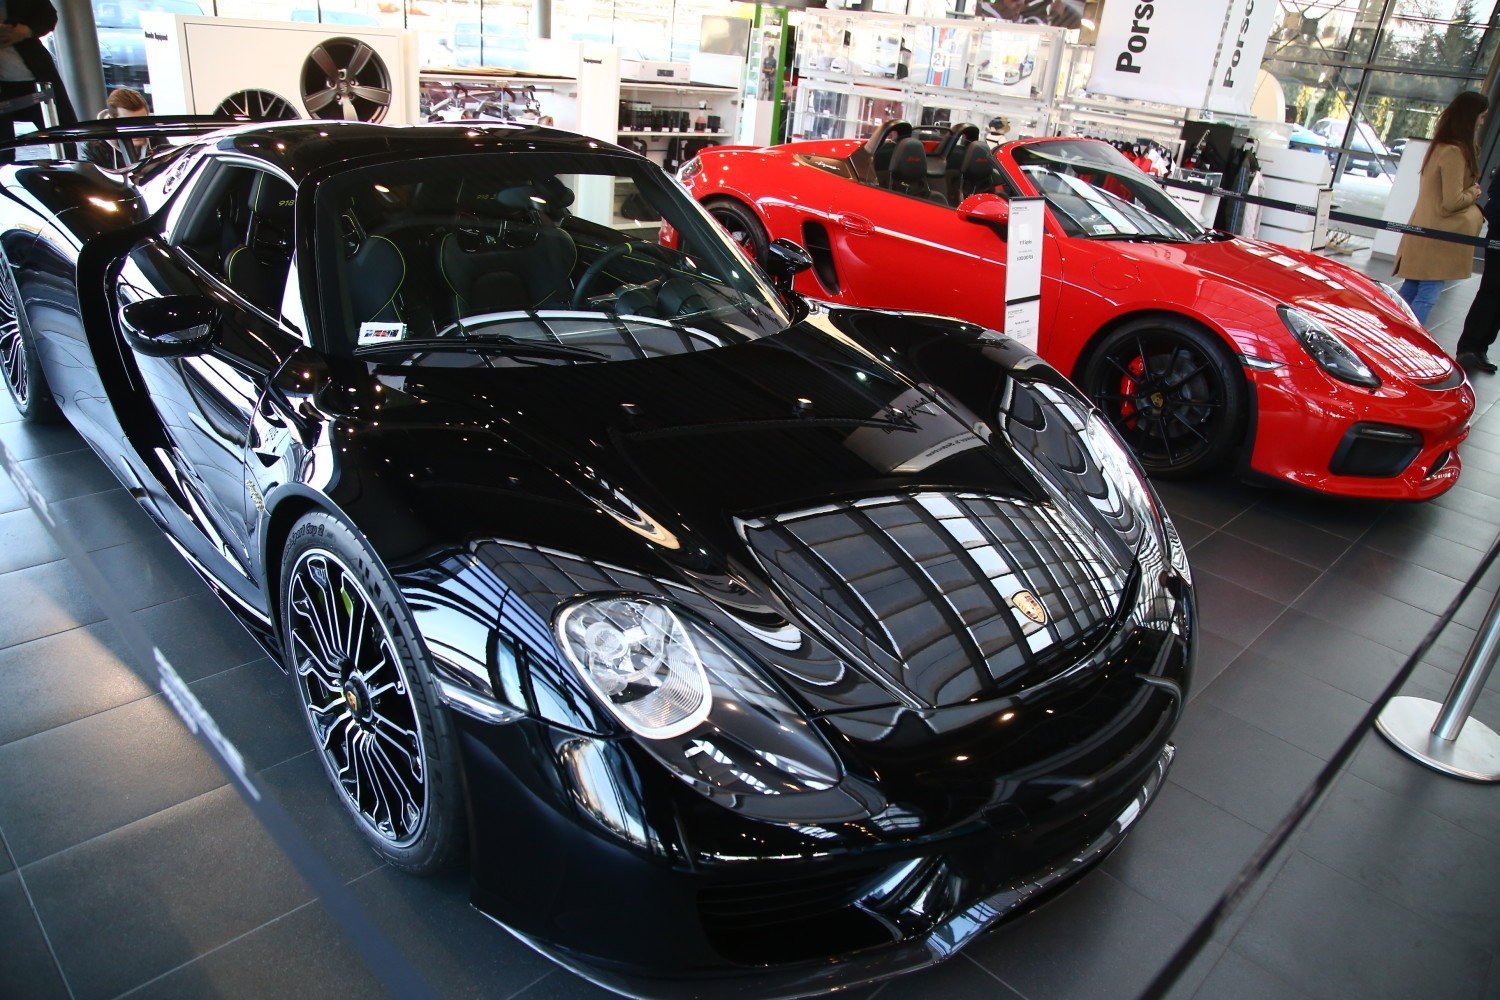 Wielka wystawa Porsche w Warszawie. Ponad 50 modeli